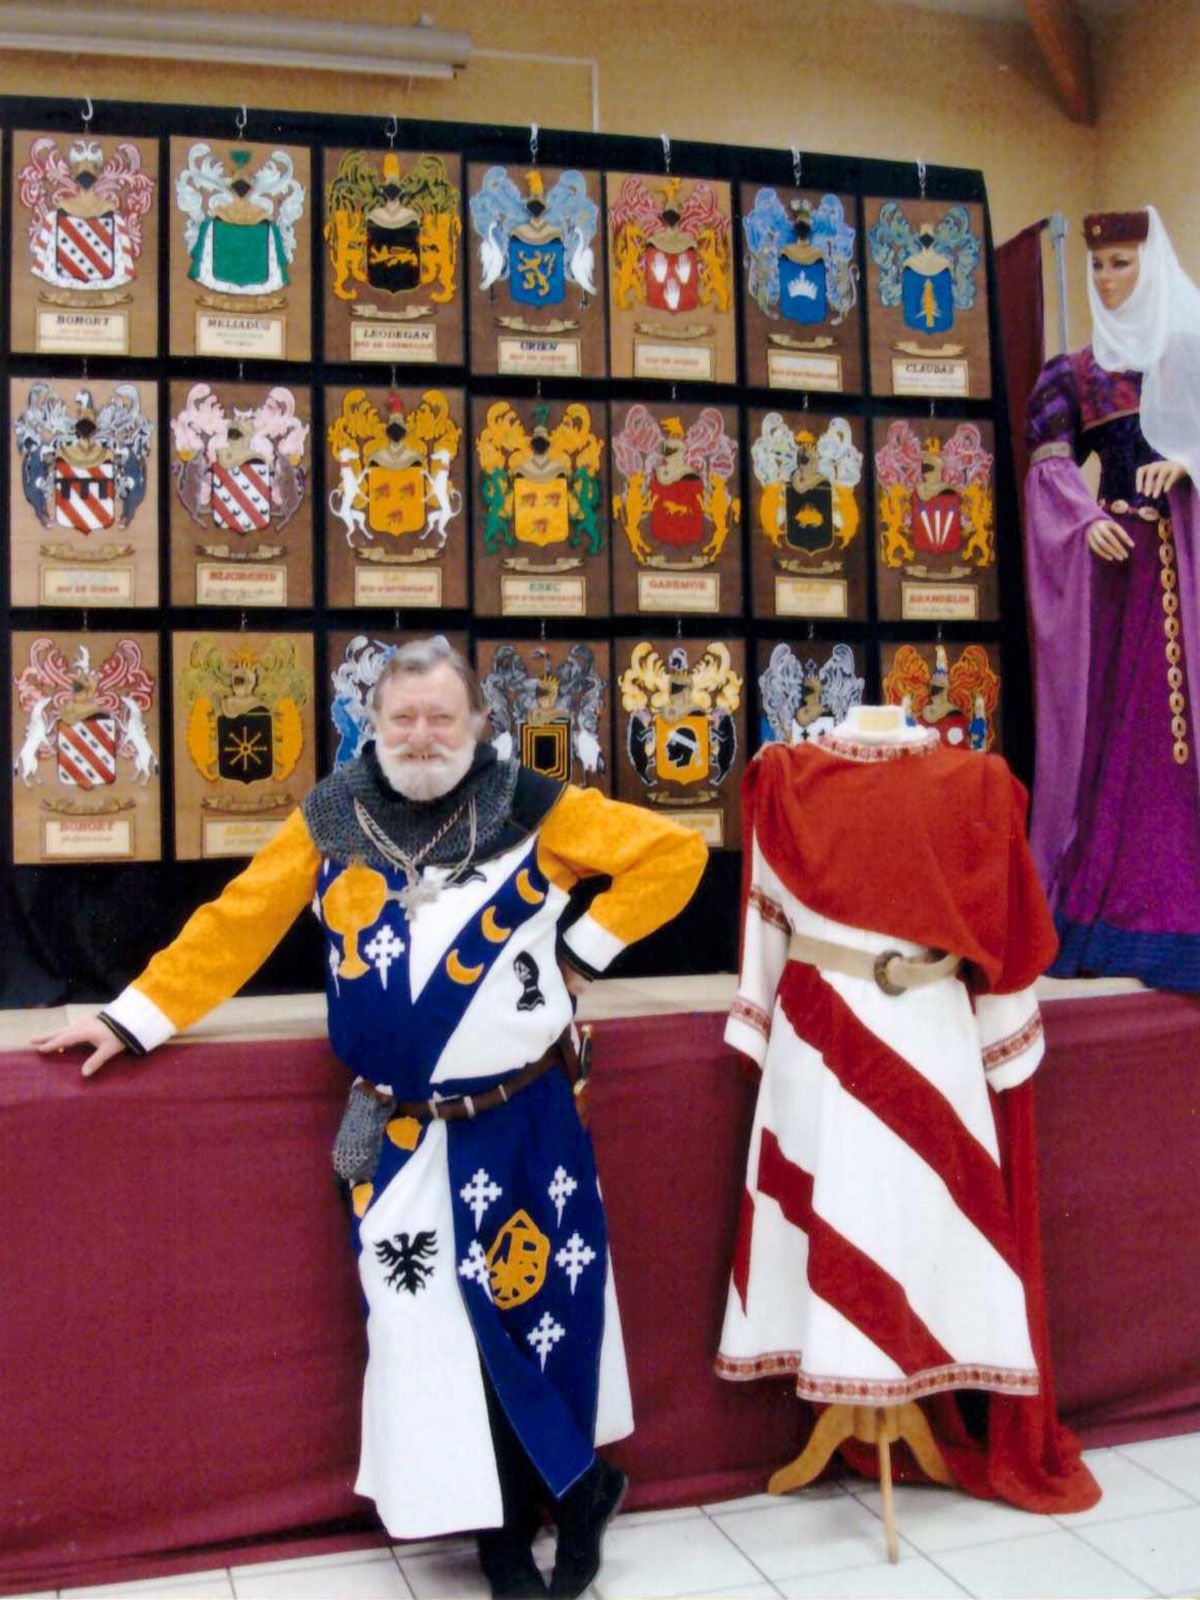 Exposition de blasons, costumes du Moyen Âge